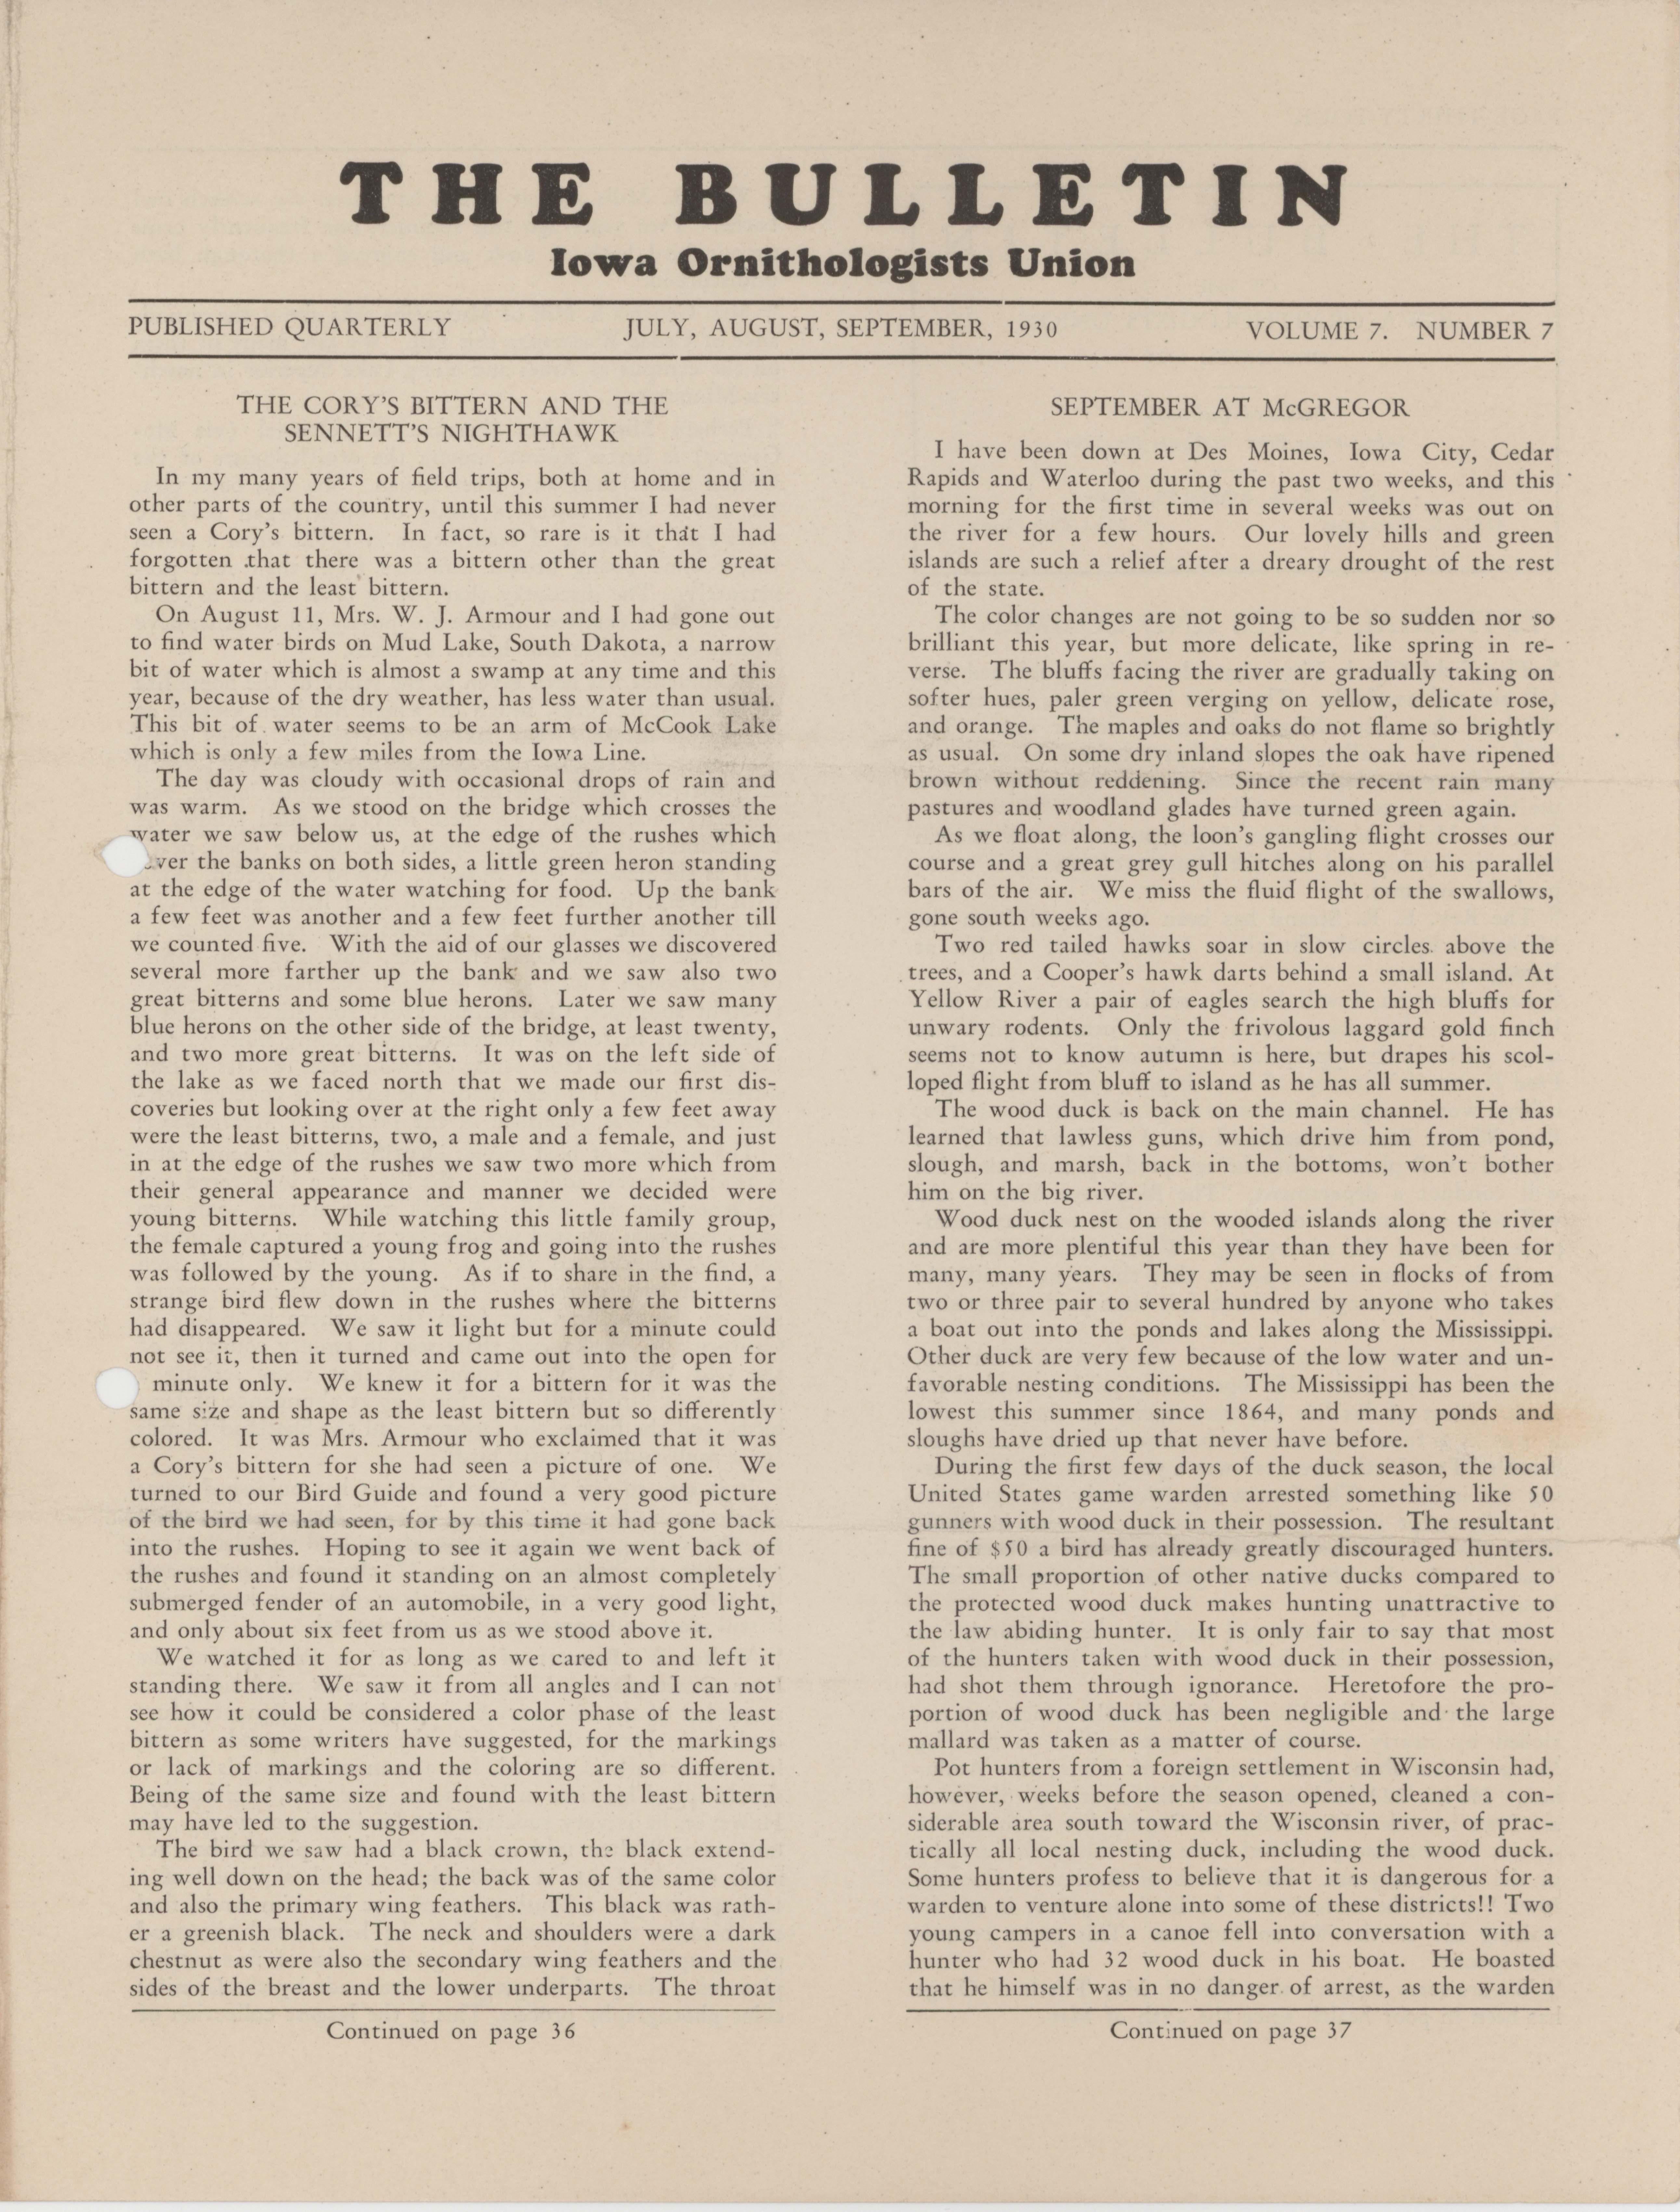 Bulletin (Iowa Ornithologists Union), Volume 7, Number 7, July/September 1930